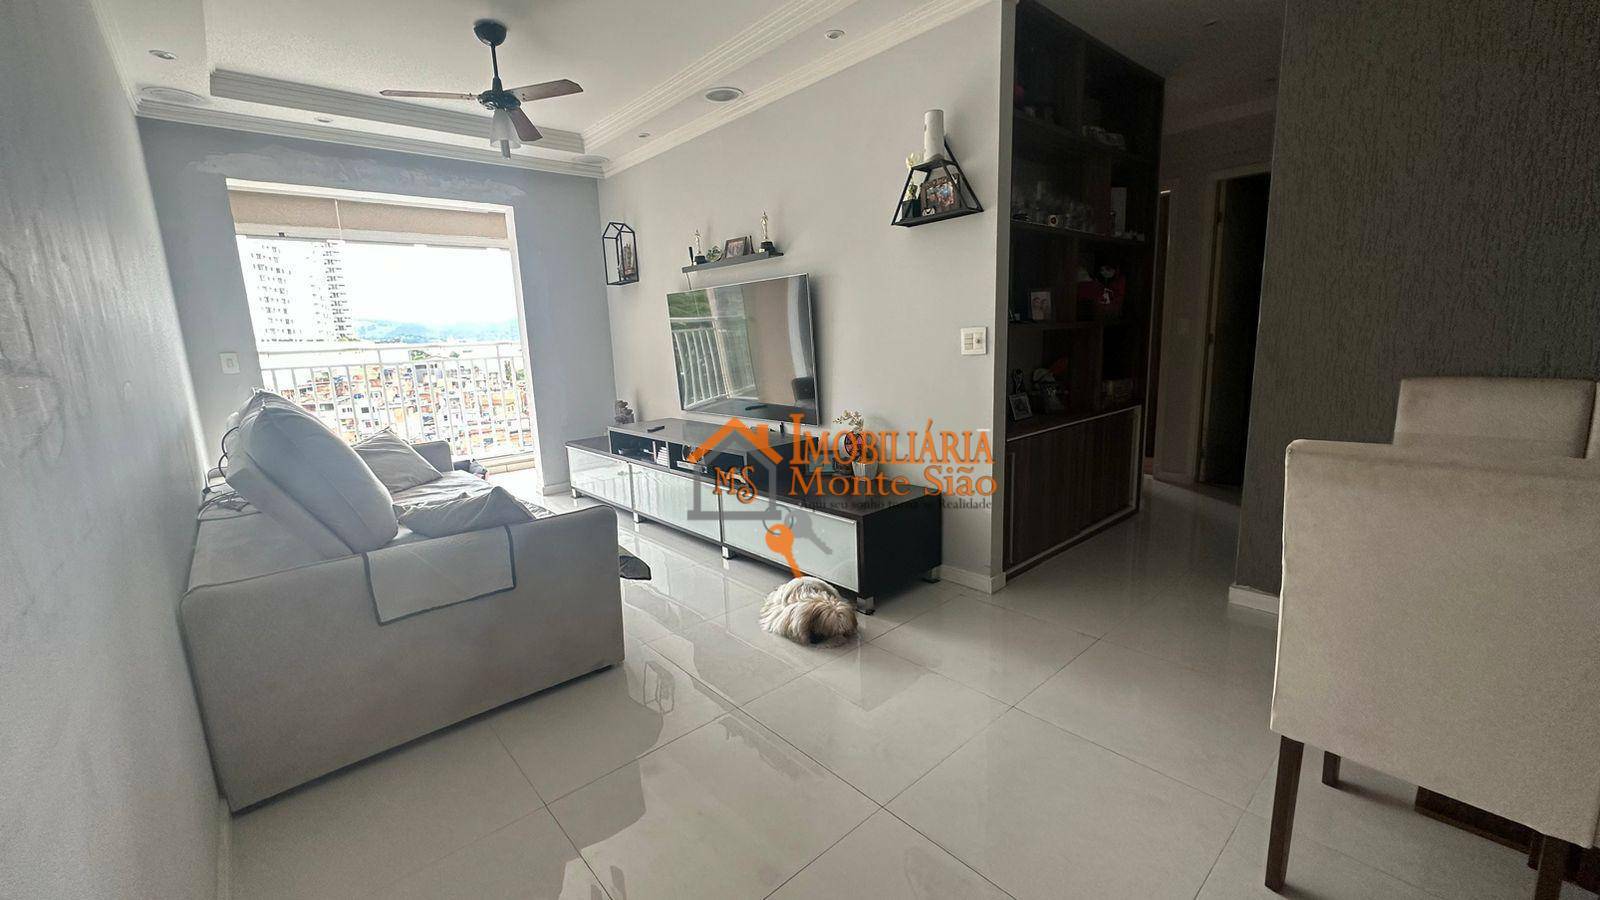 Apartamento à venda, 77 m² por R$ 620.000,00 - Vila Rosália - Guarulhos/SP